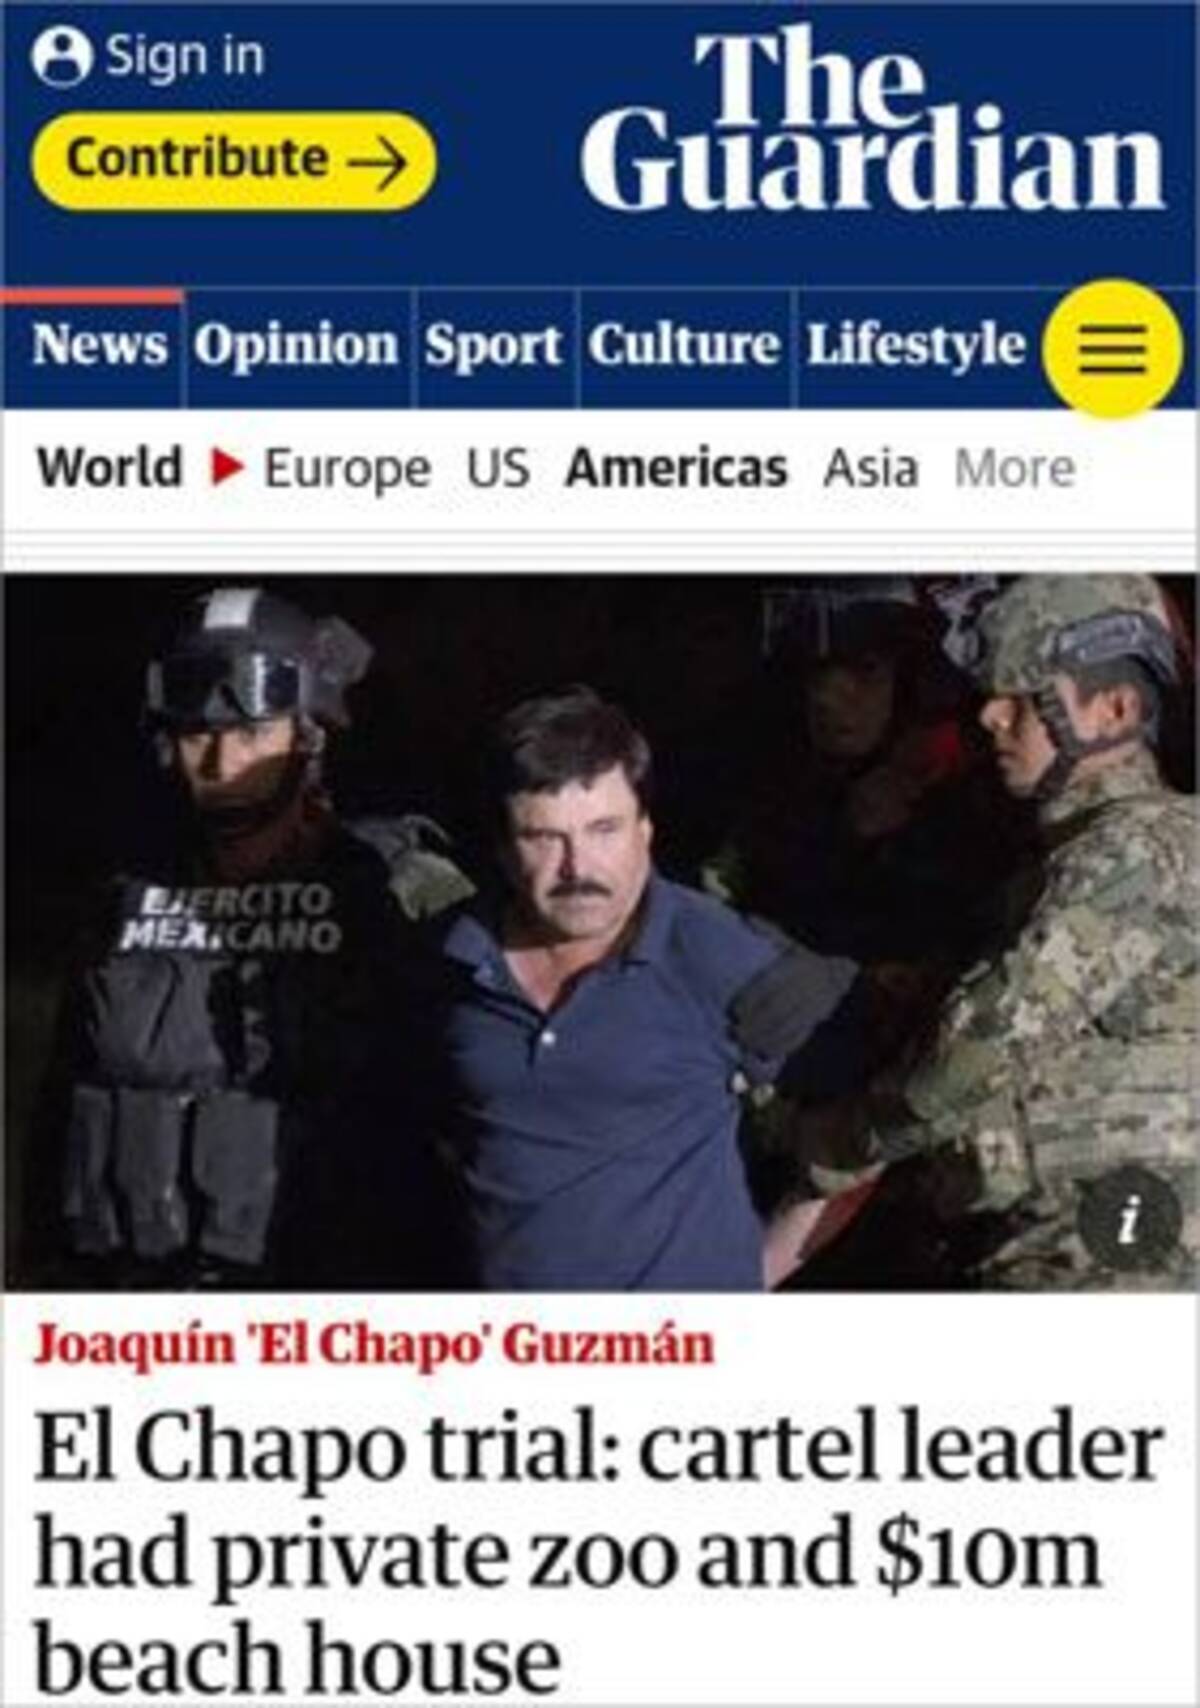 プライベート動物園に 若返り手術まで メキシコ人 麻薬王 の豪華ライフをかつての右腕が暴露 18年12月6日 エキサイトニュース